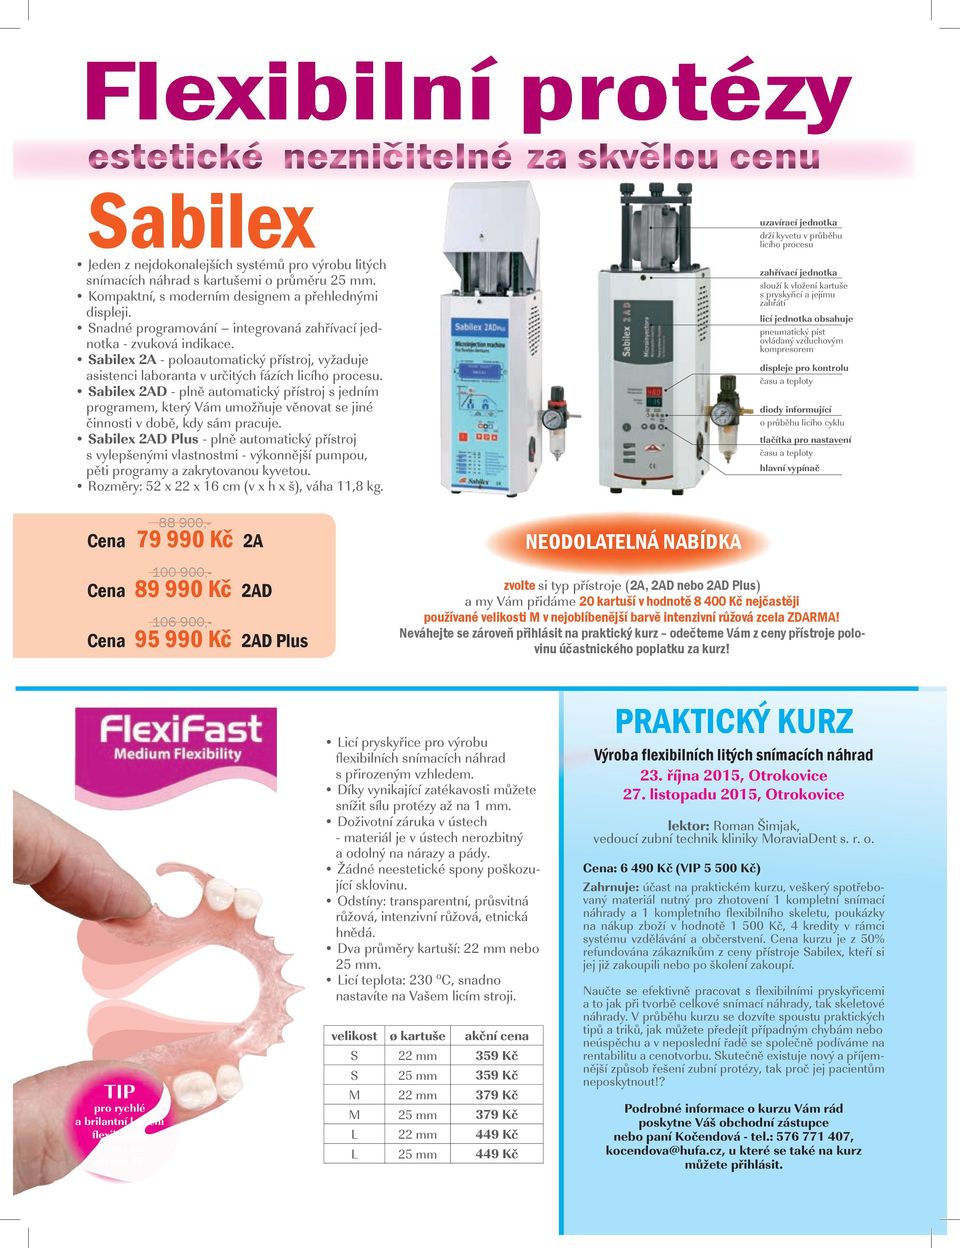 Sabilex 2A - poloautomatický přístroj, vyžaduje asistenci laboranta v určitých fázích licího procesu.